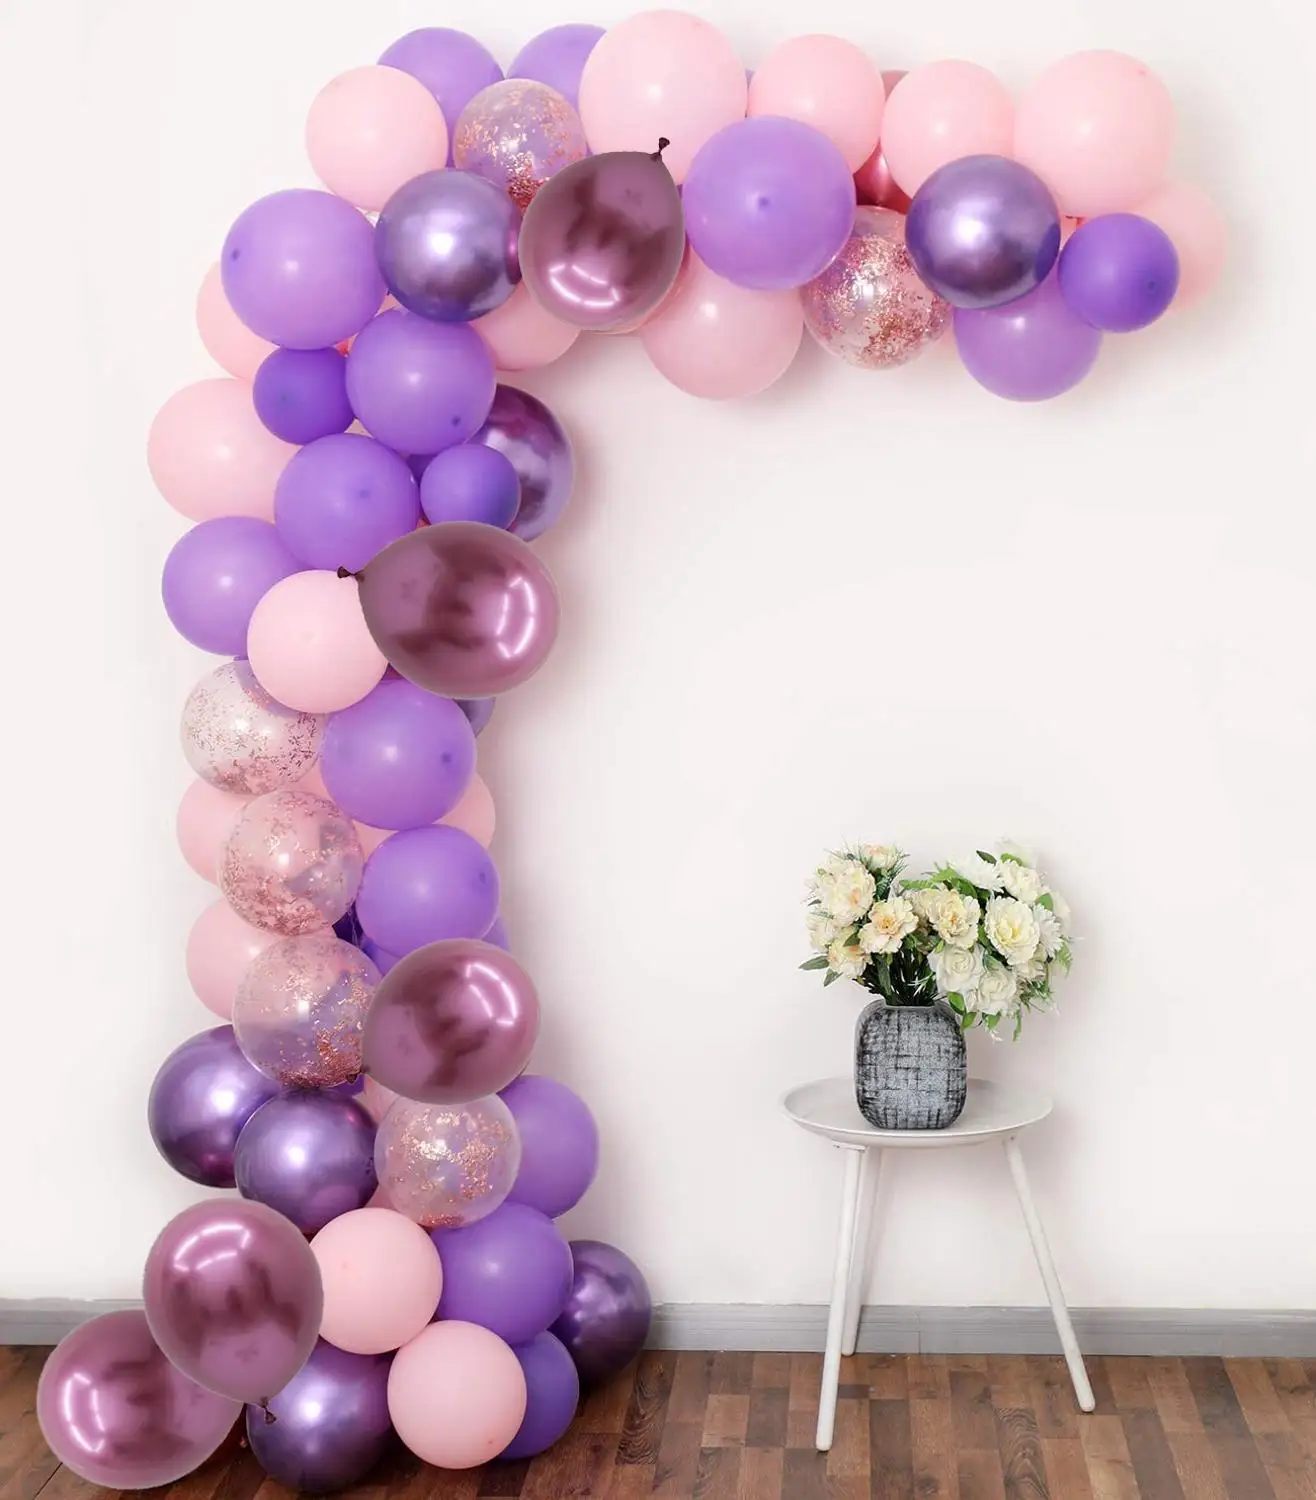 

Фиолетовый розовый воздушный шар комплект гирлянды воздушные шары с конфетти цвета розовое золото фон для дня рождения ребенка свадебный д...